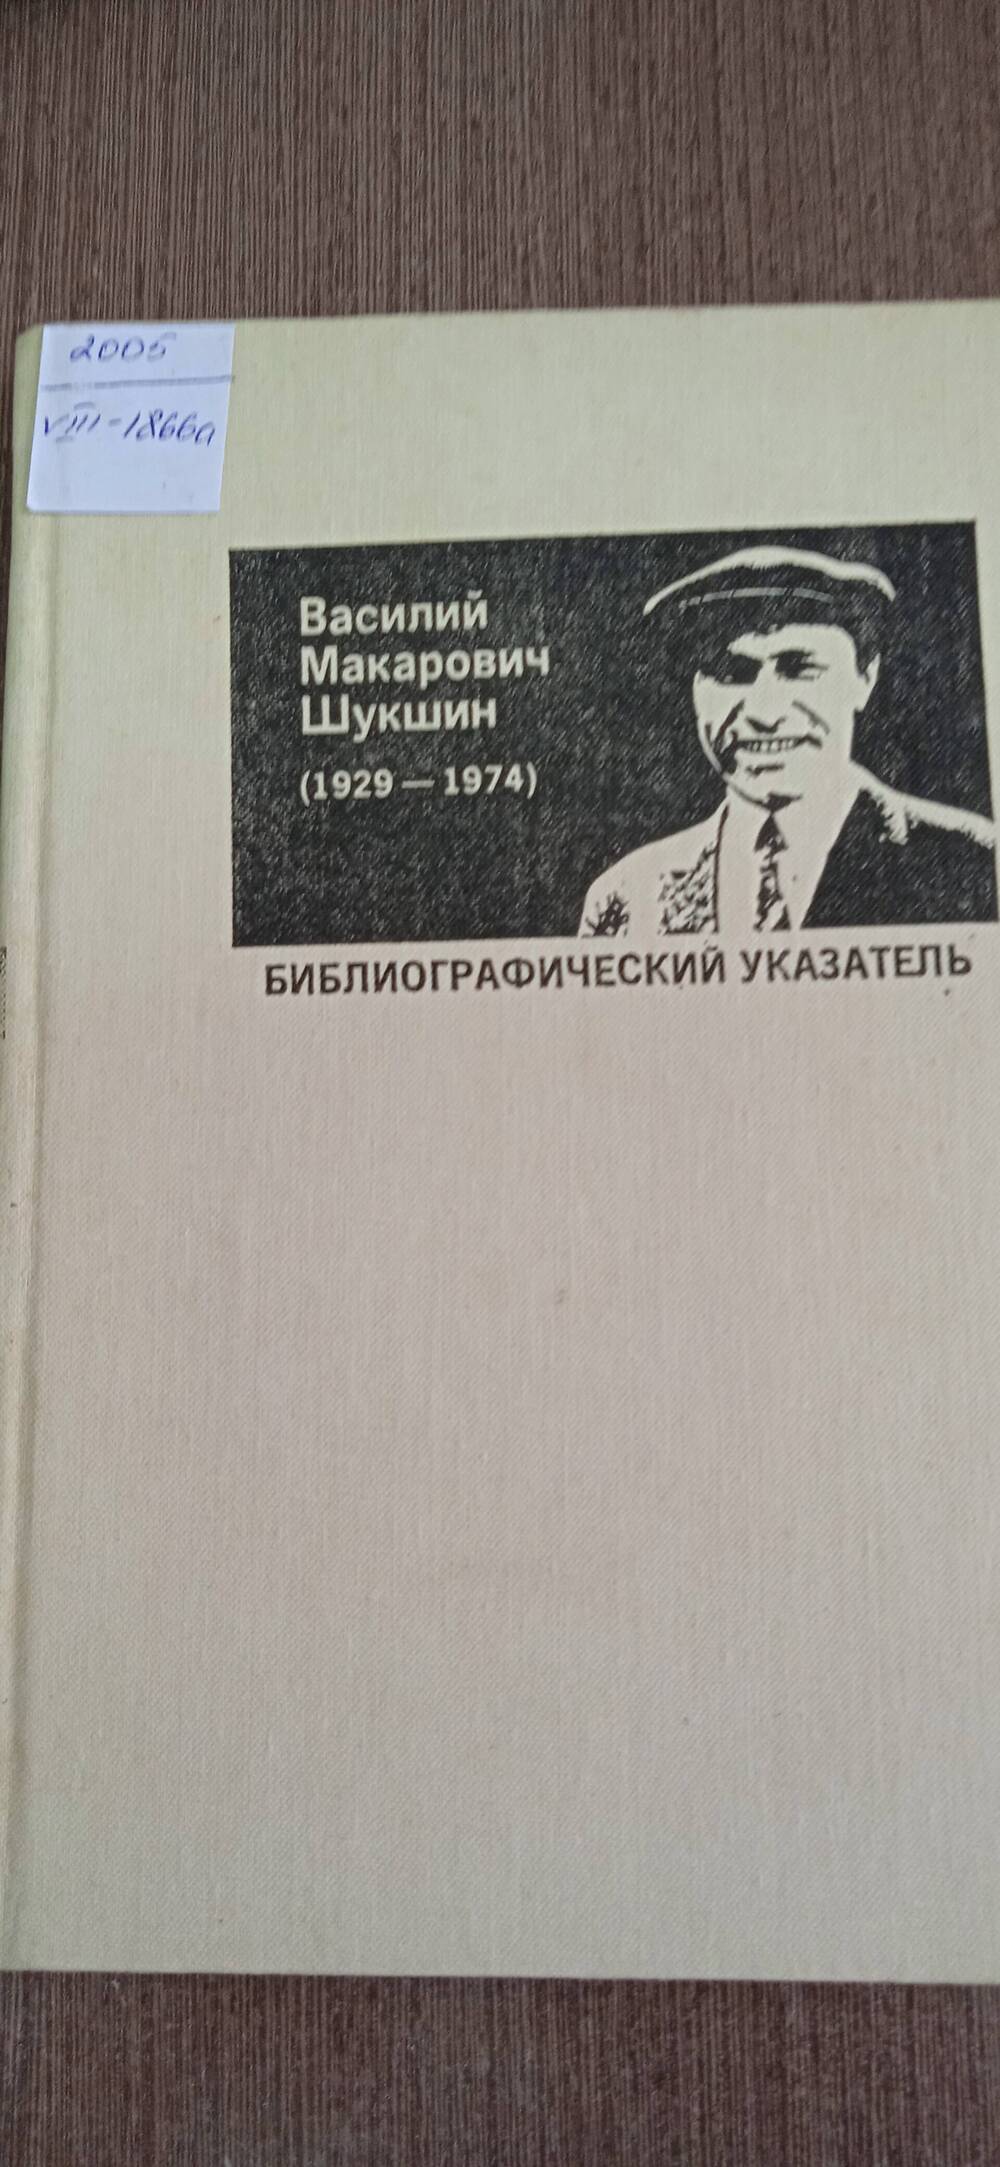 Книга. Василий Макарович Шукшин (1929-1974).
Библиографический указатель.